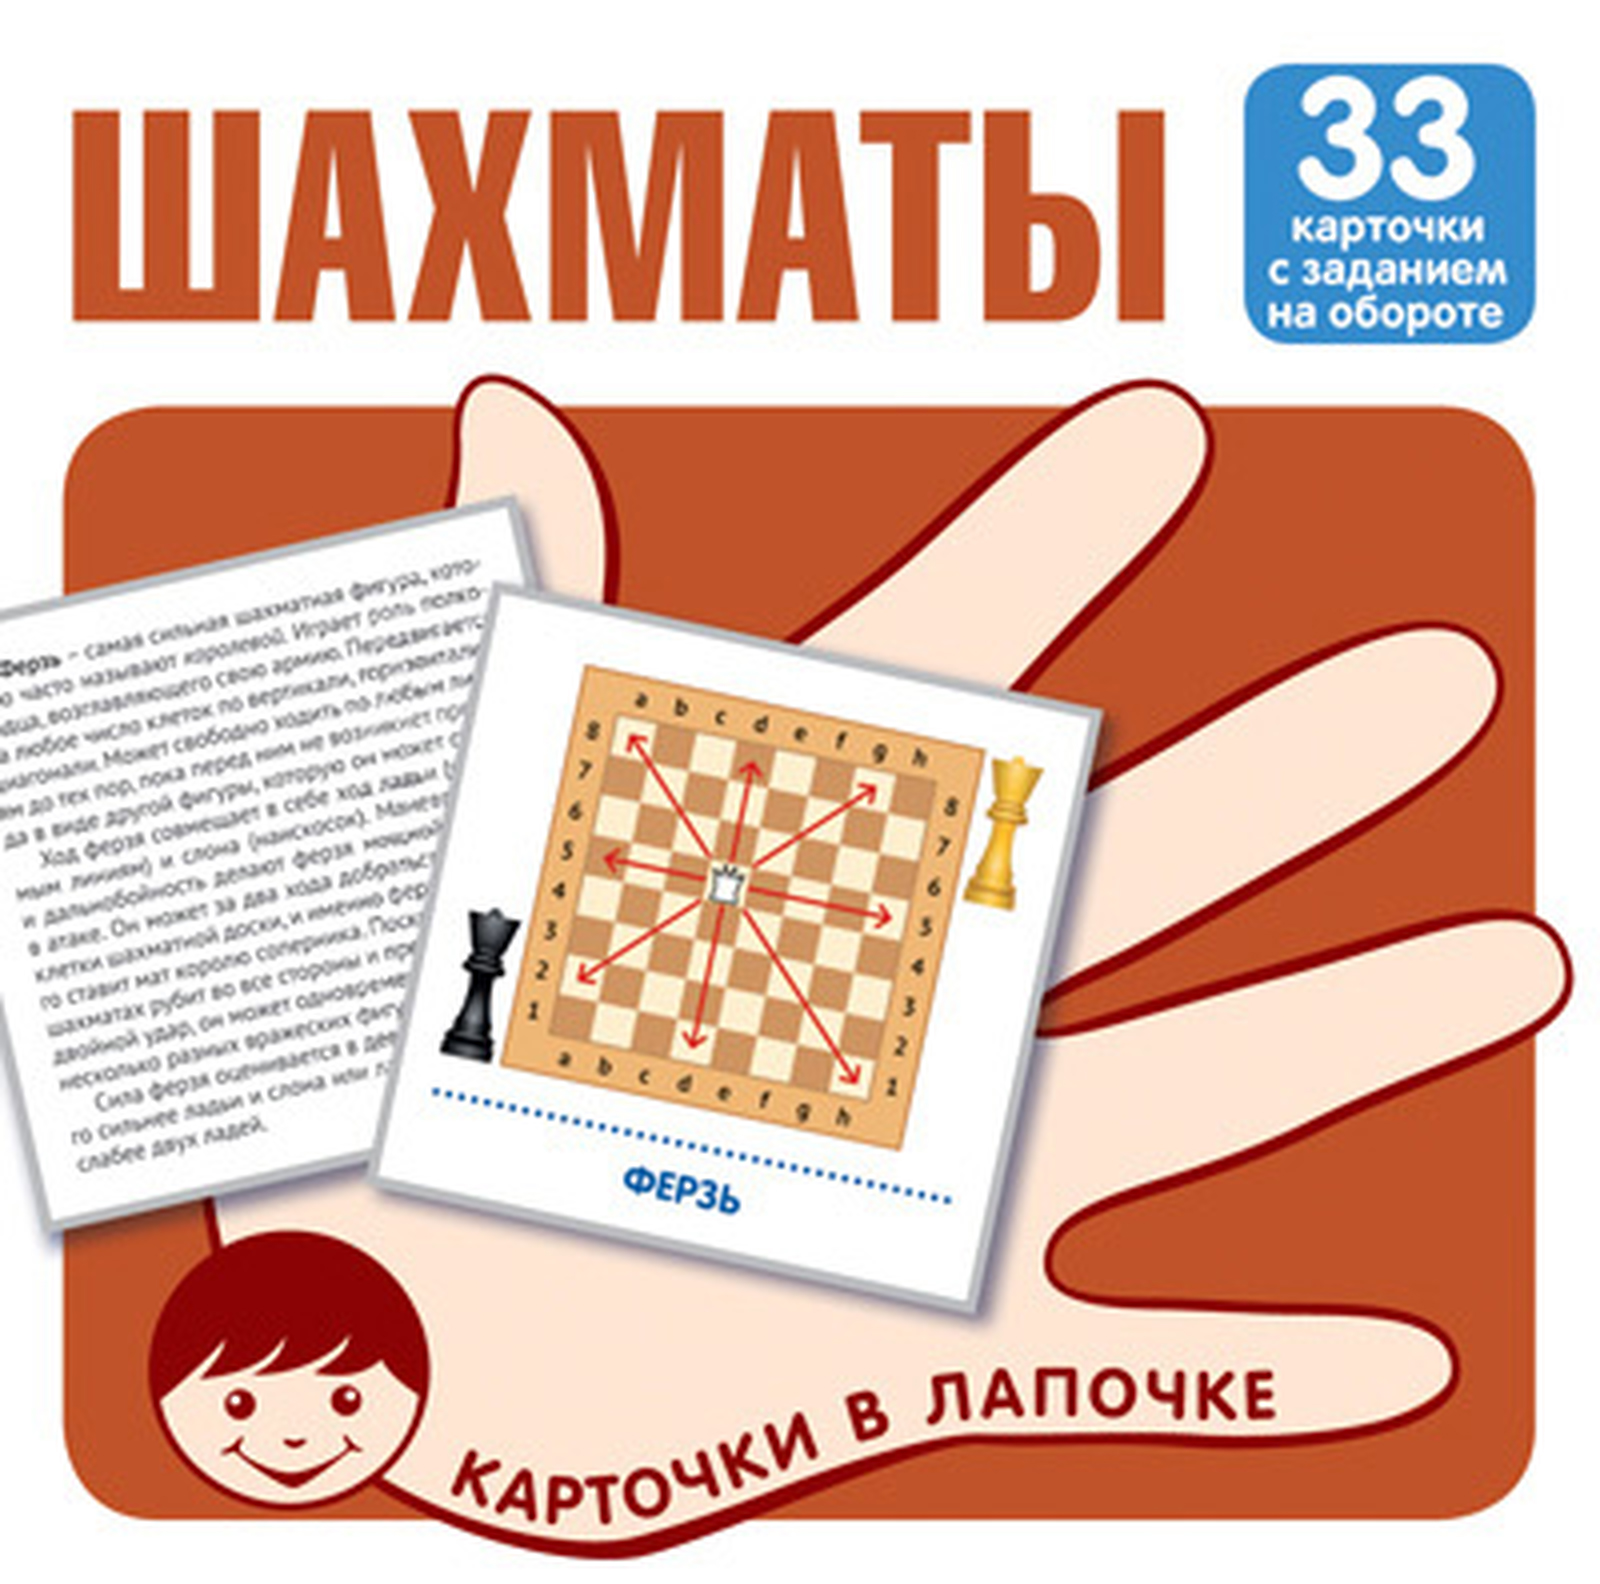 Карточки в лапочке Шахматы 33 карточки с заданием на обороте малороссийские исторические шахматы герои и антигерои малорусской истории